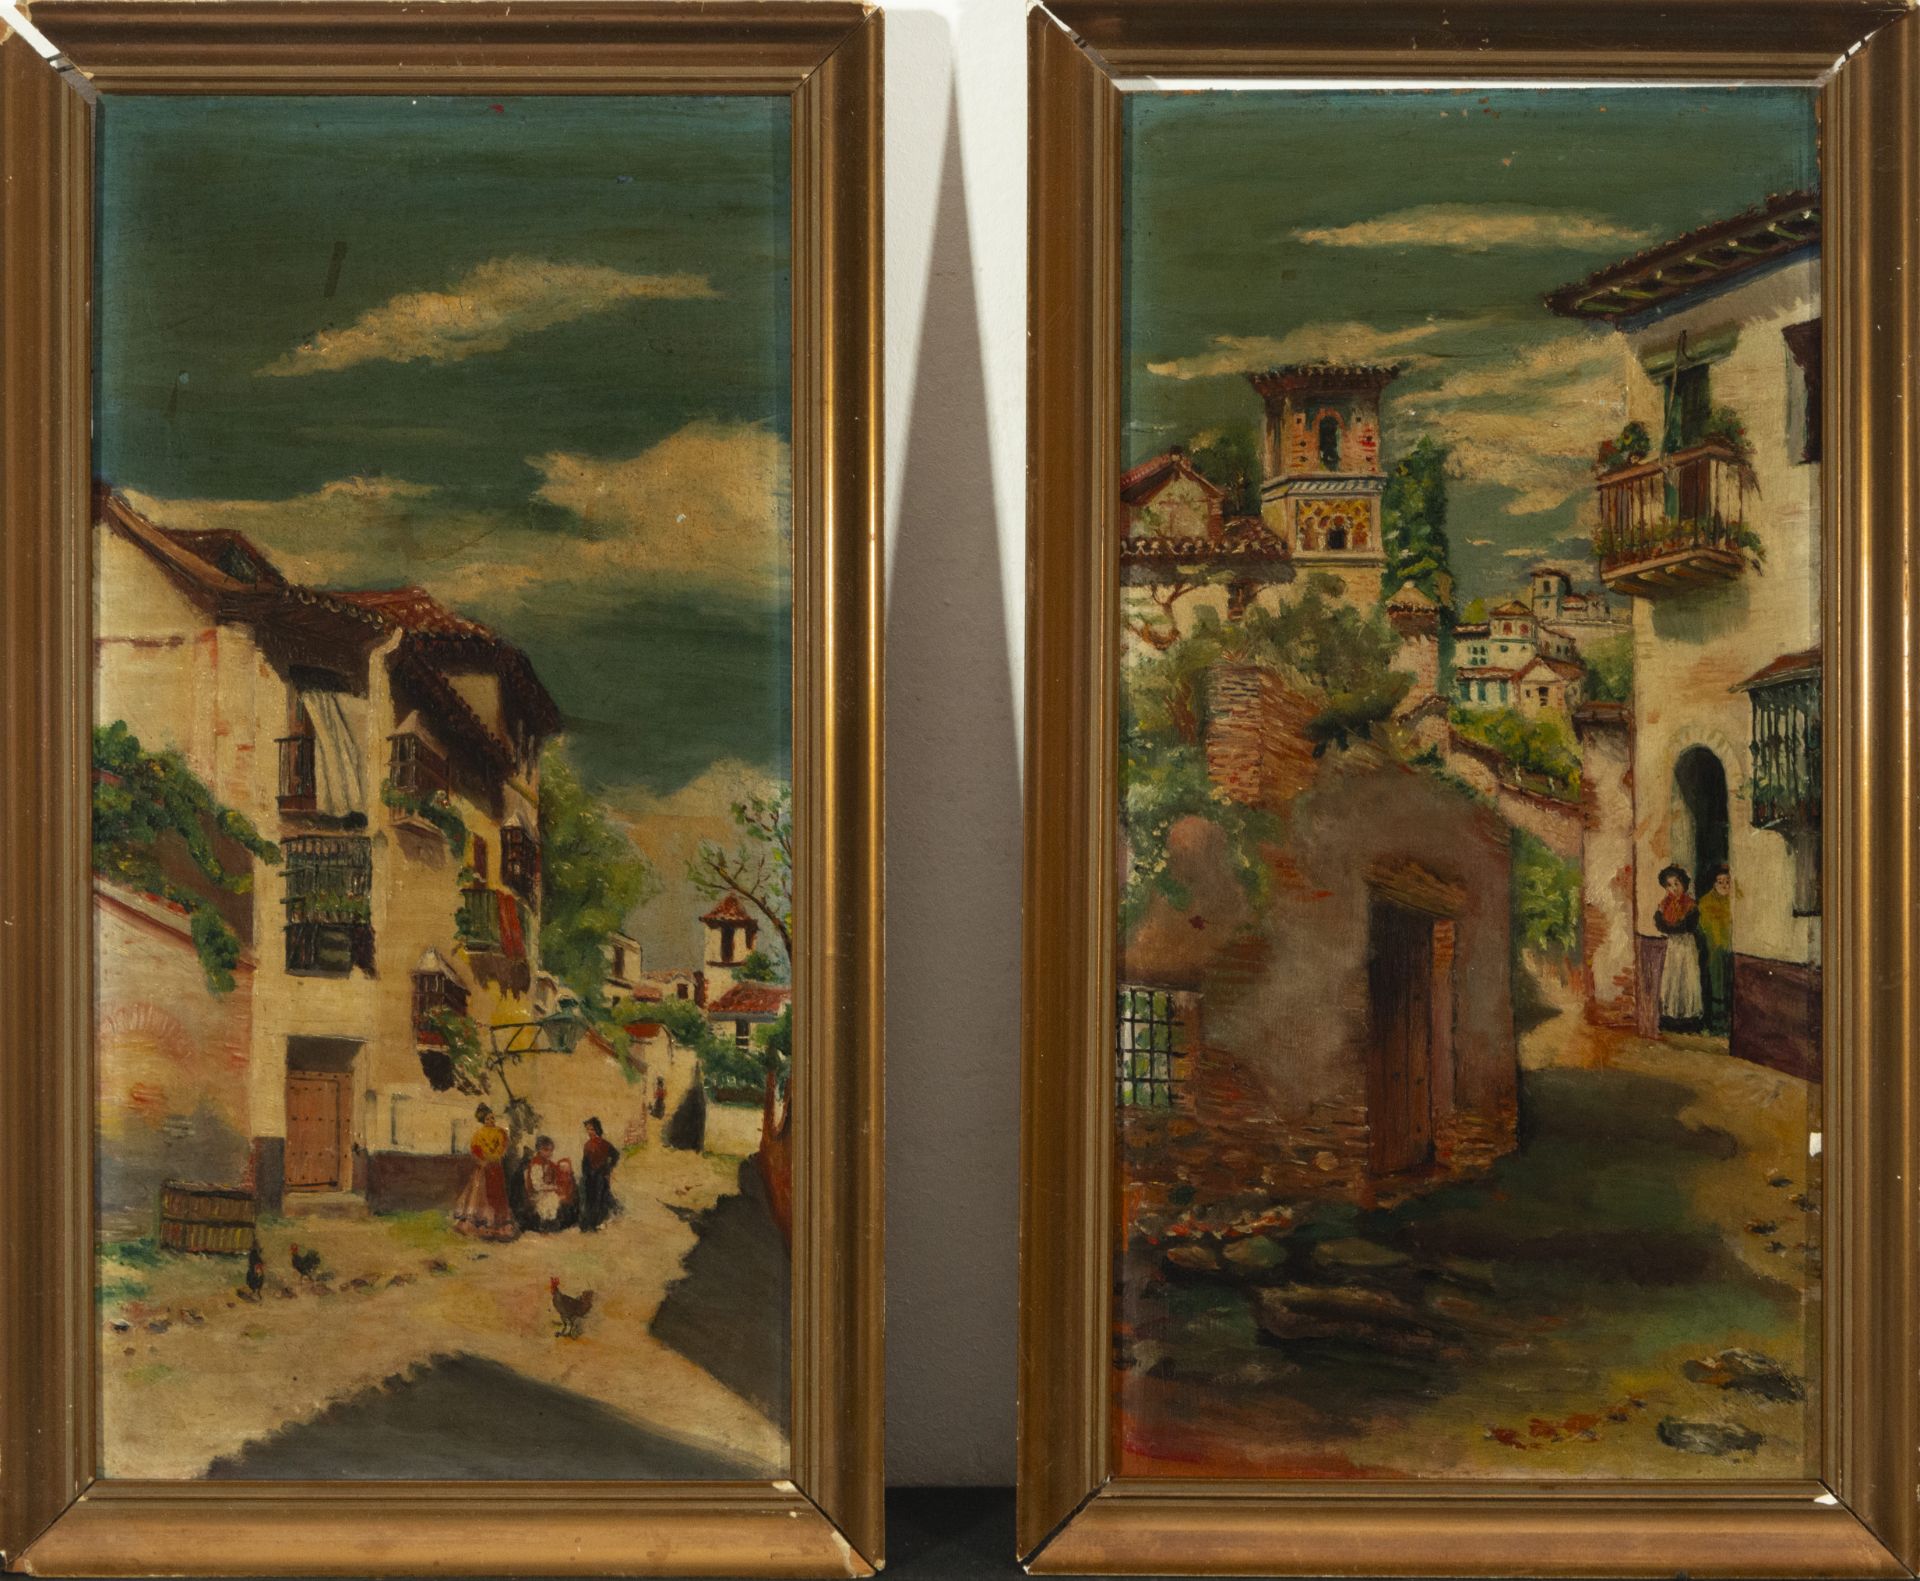 Pair of oil paintings on panel of Vista de Poblado, 19th century